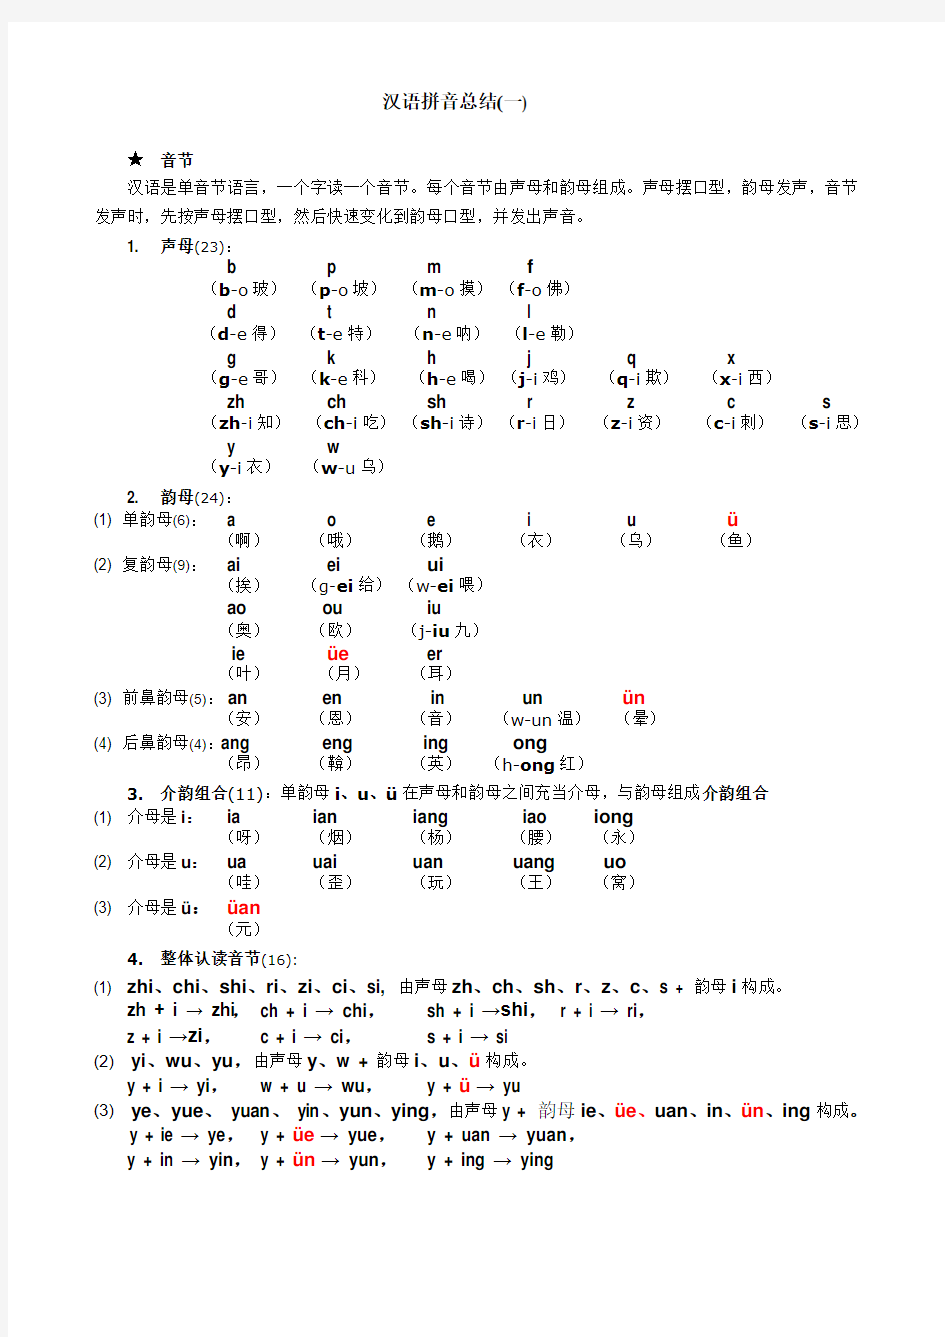 汉语拼音总结(一)